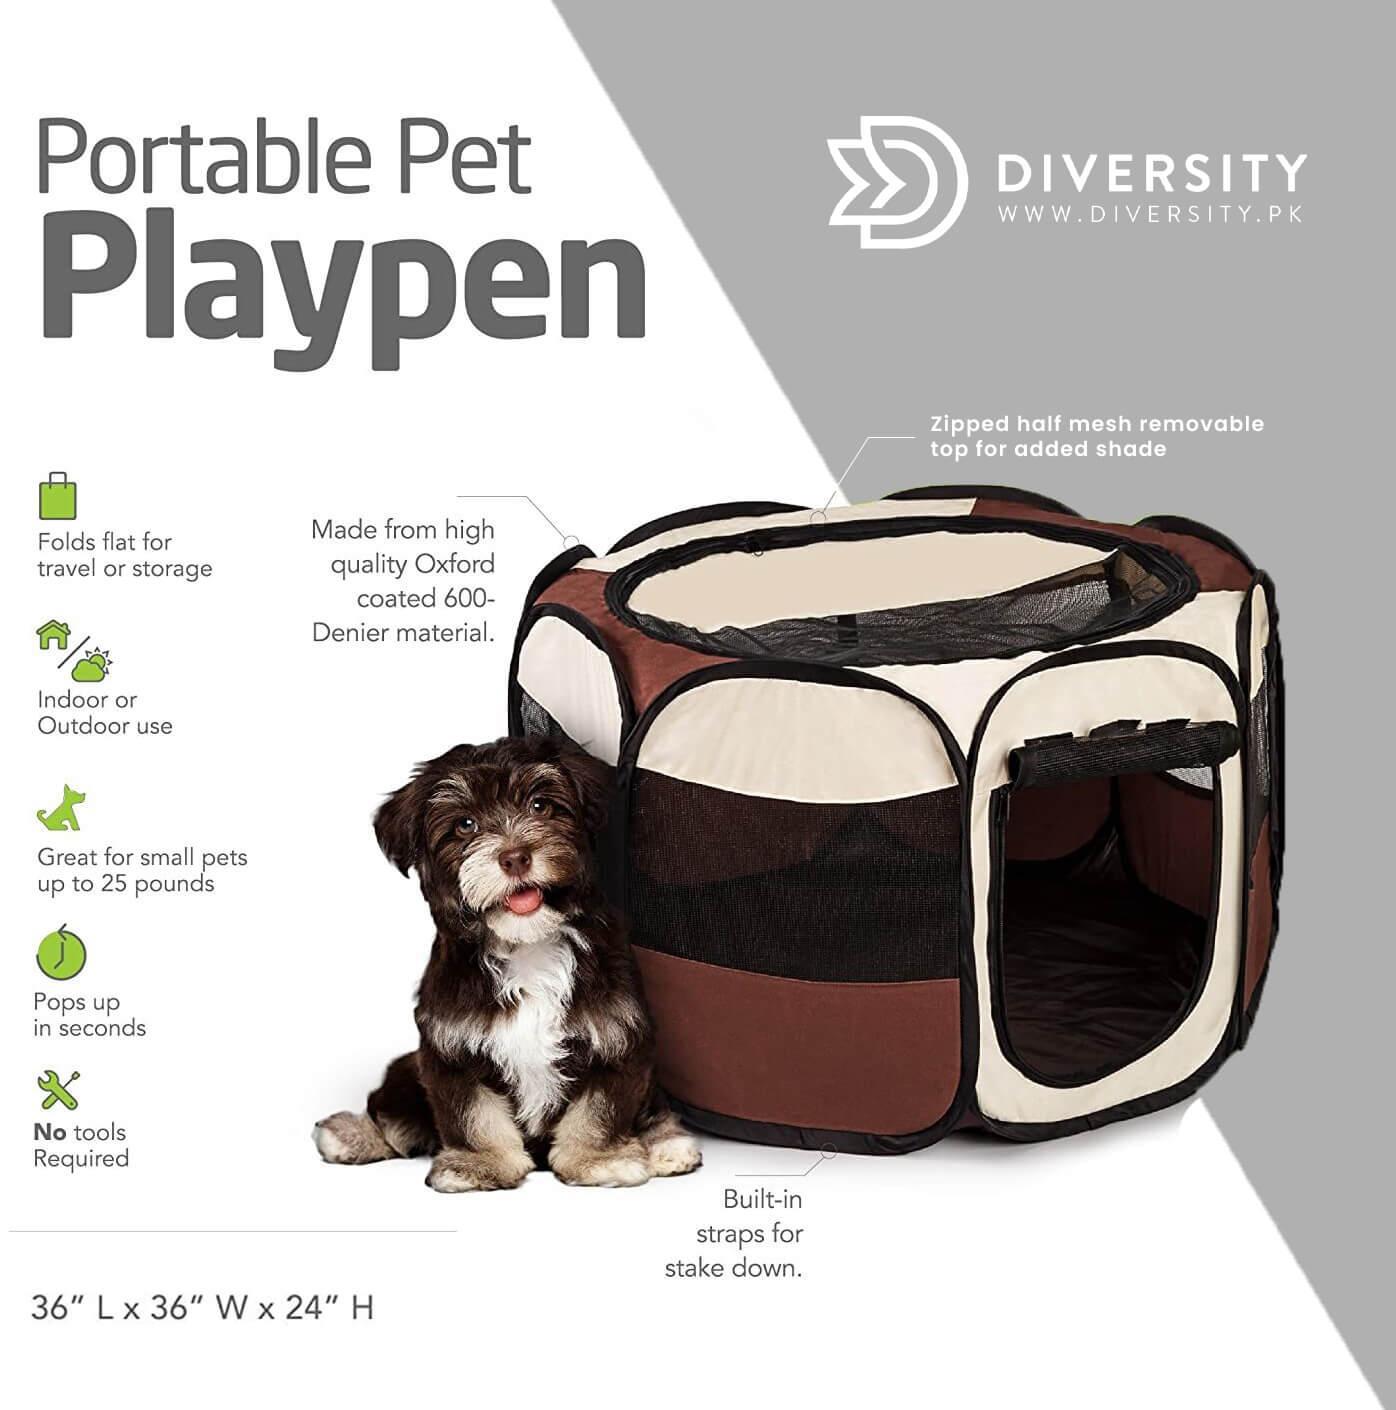 Portable Pet Playpen - DIVERSITY